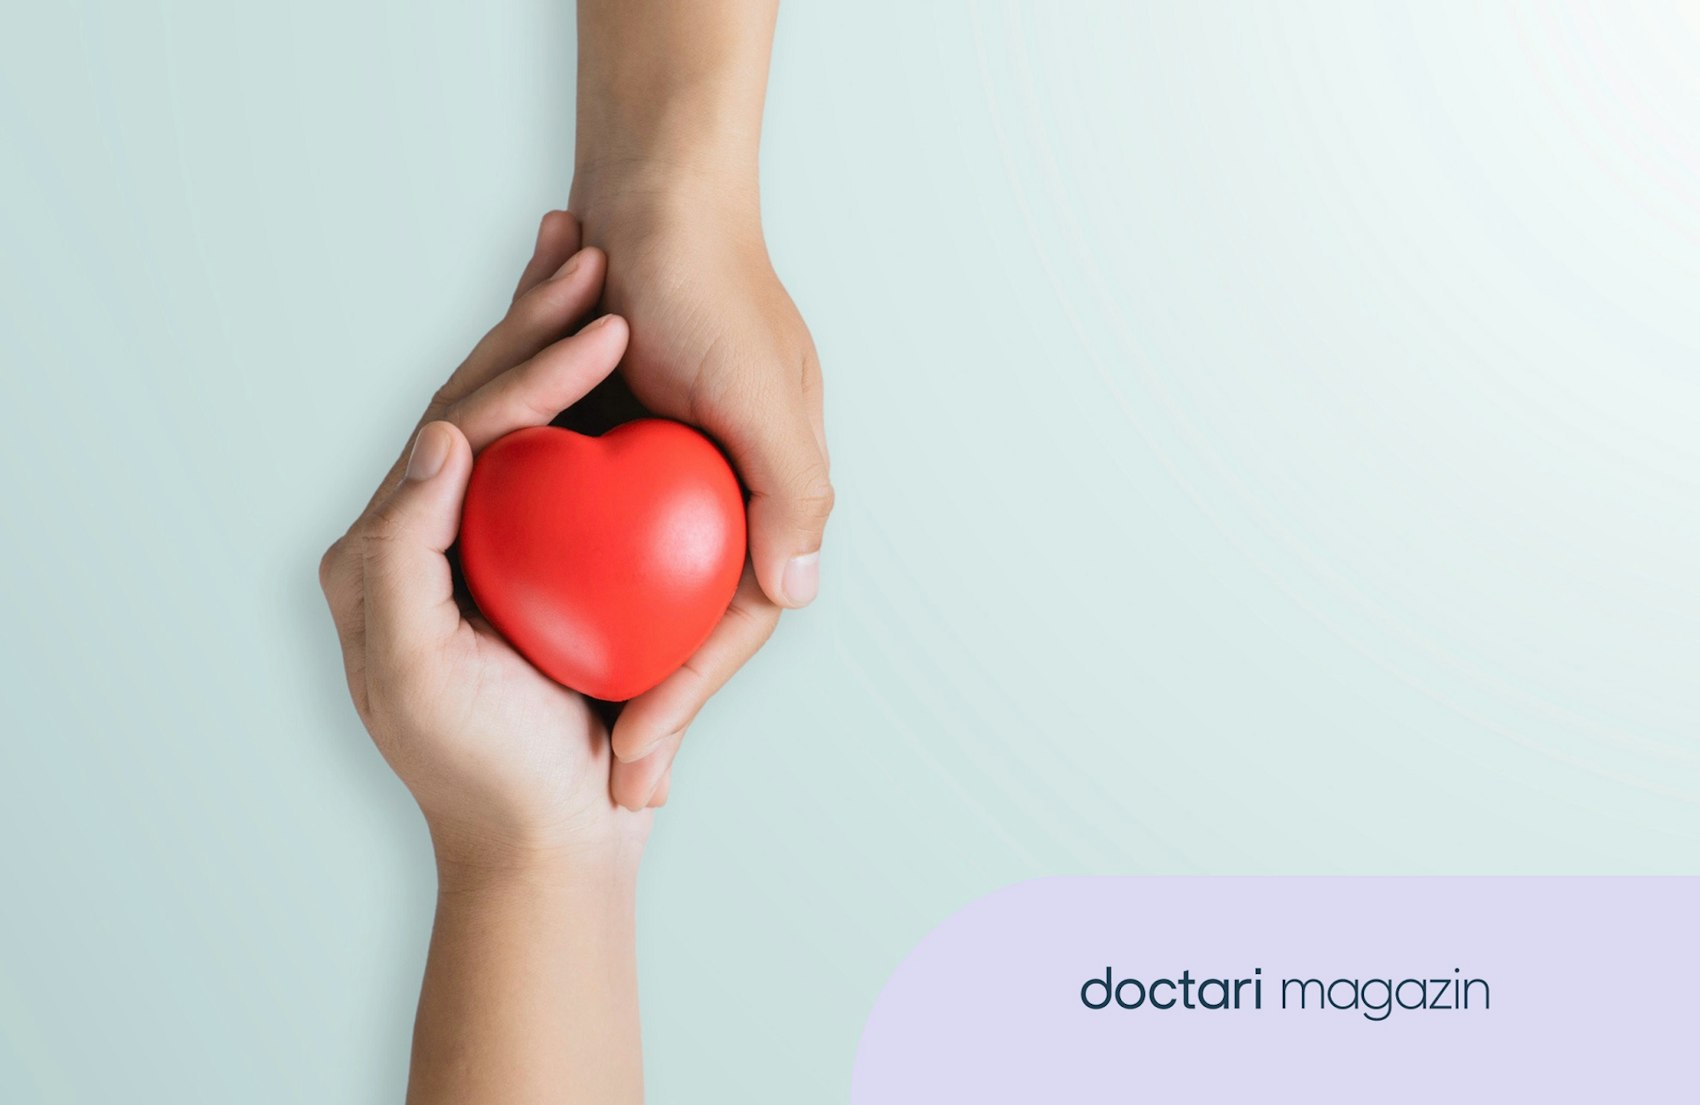 Zwei Hände halten gemeinsam ein rotes Herz - als Symbol für das Thema Organspende.